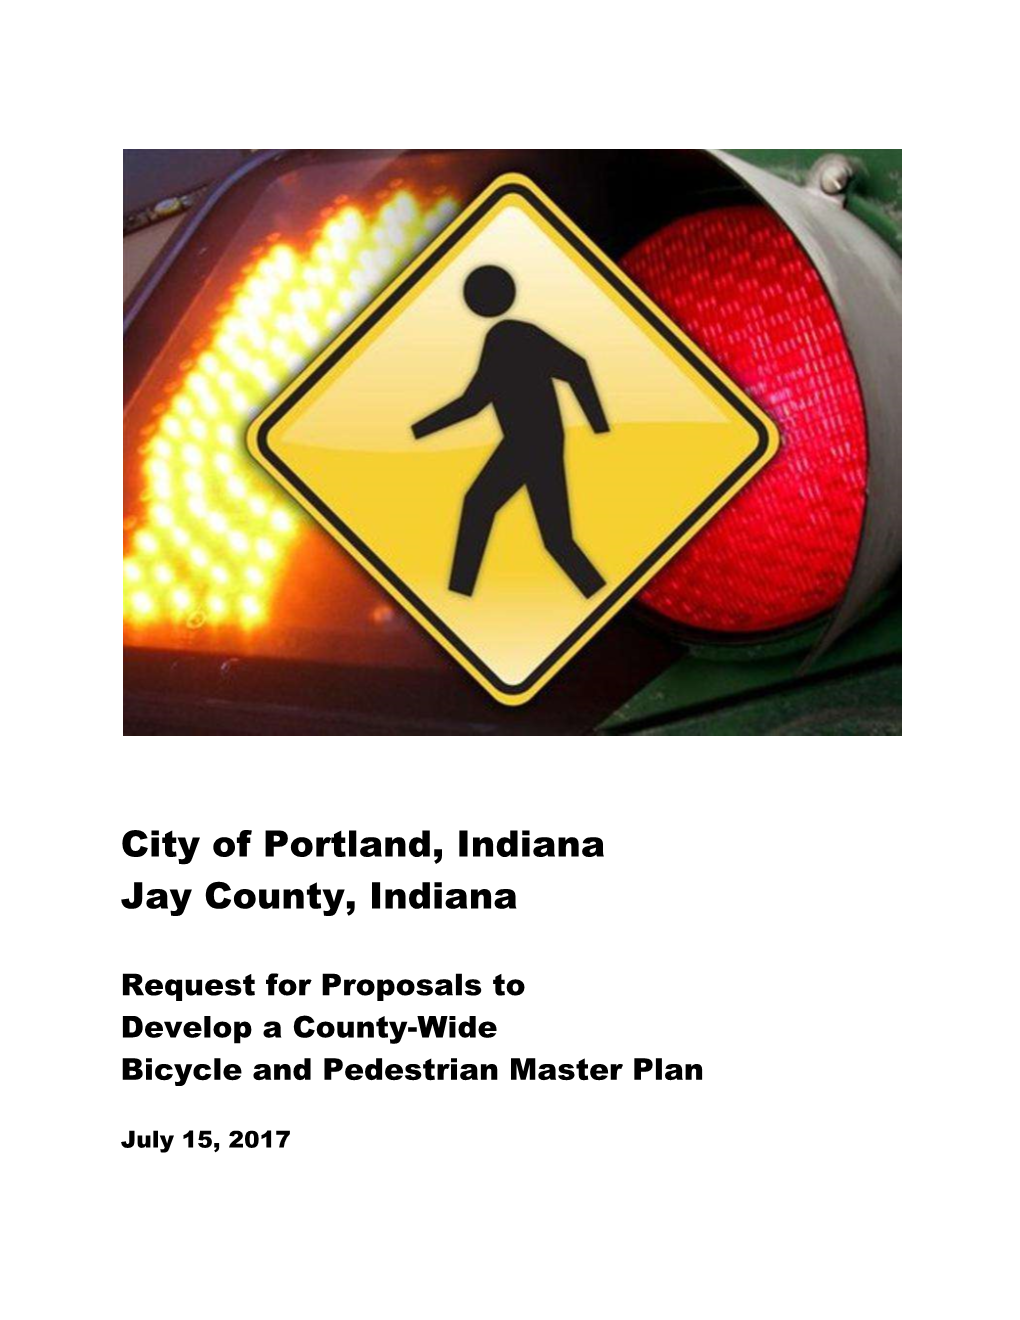 City of Portland, Indiana Jay County, Indiana